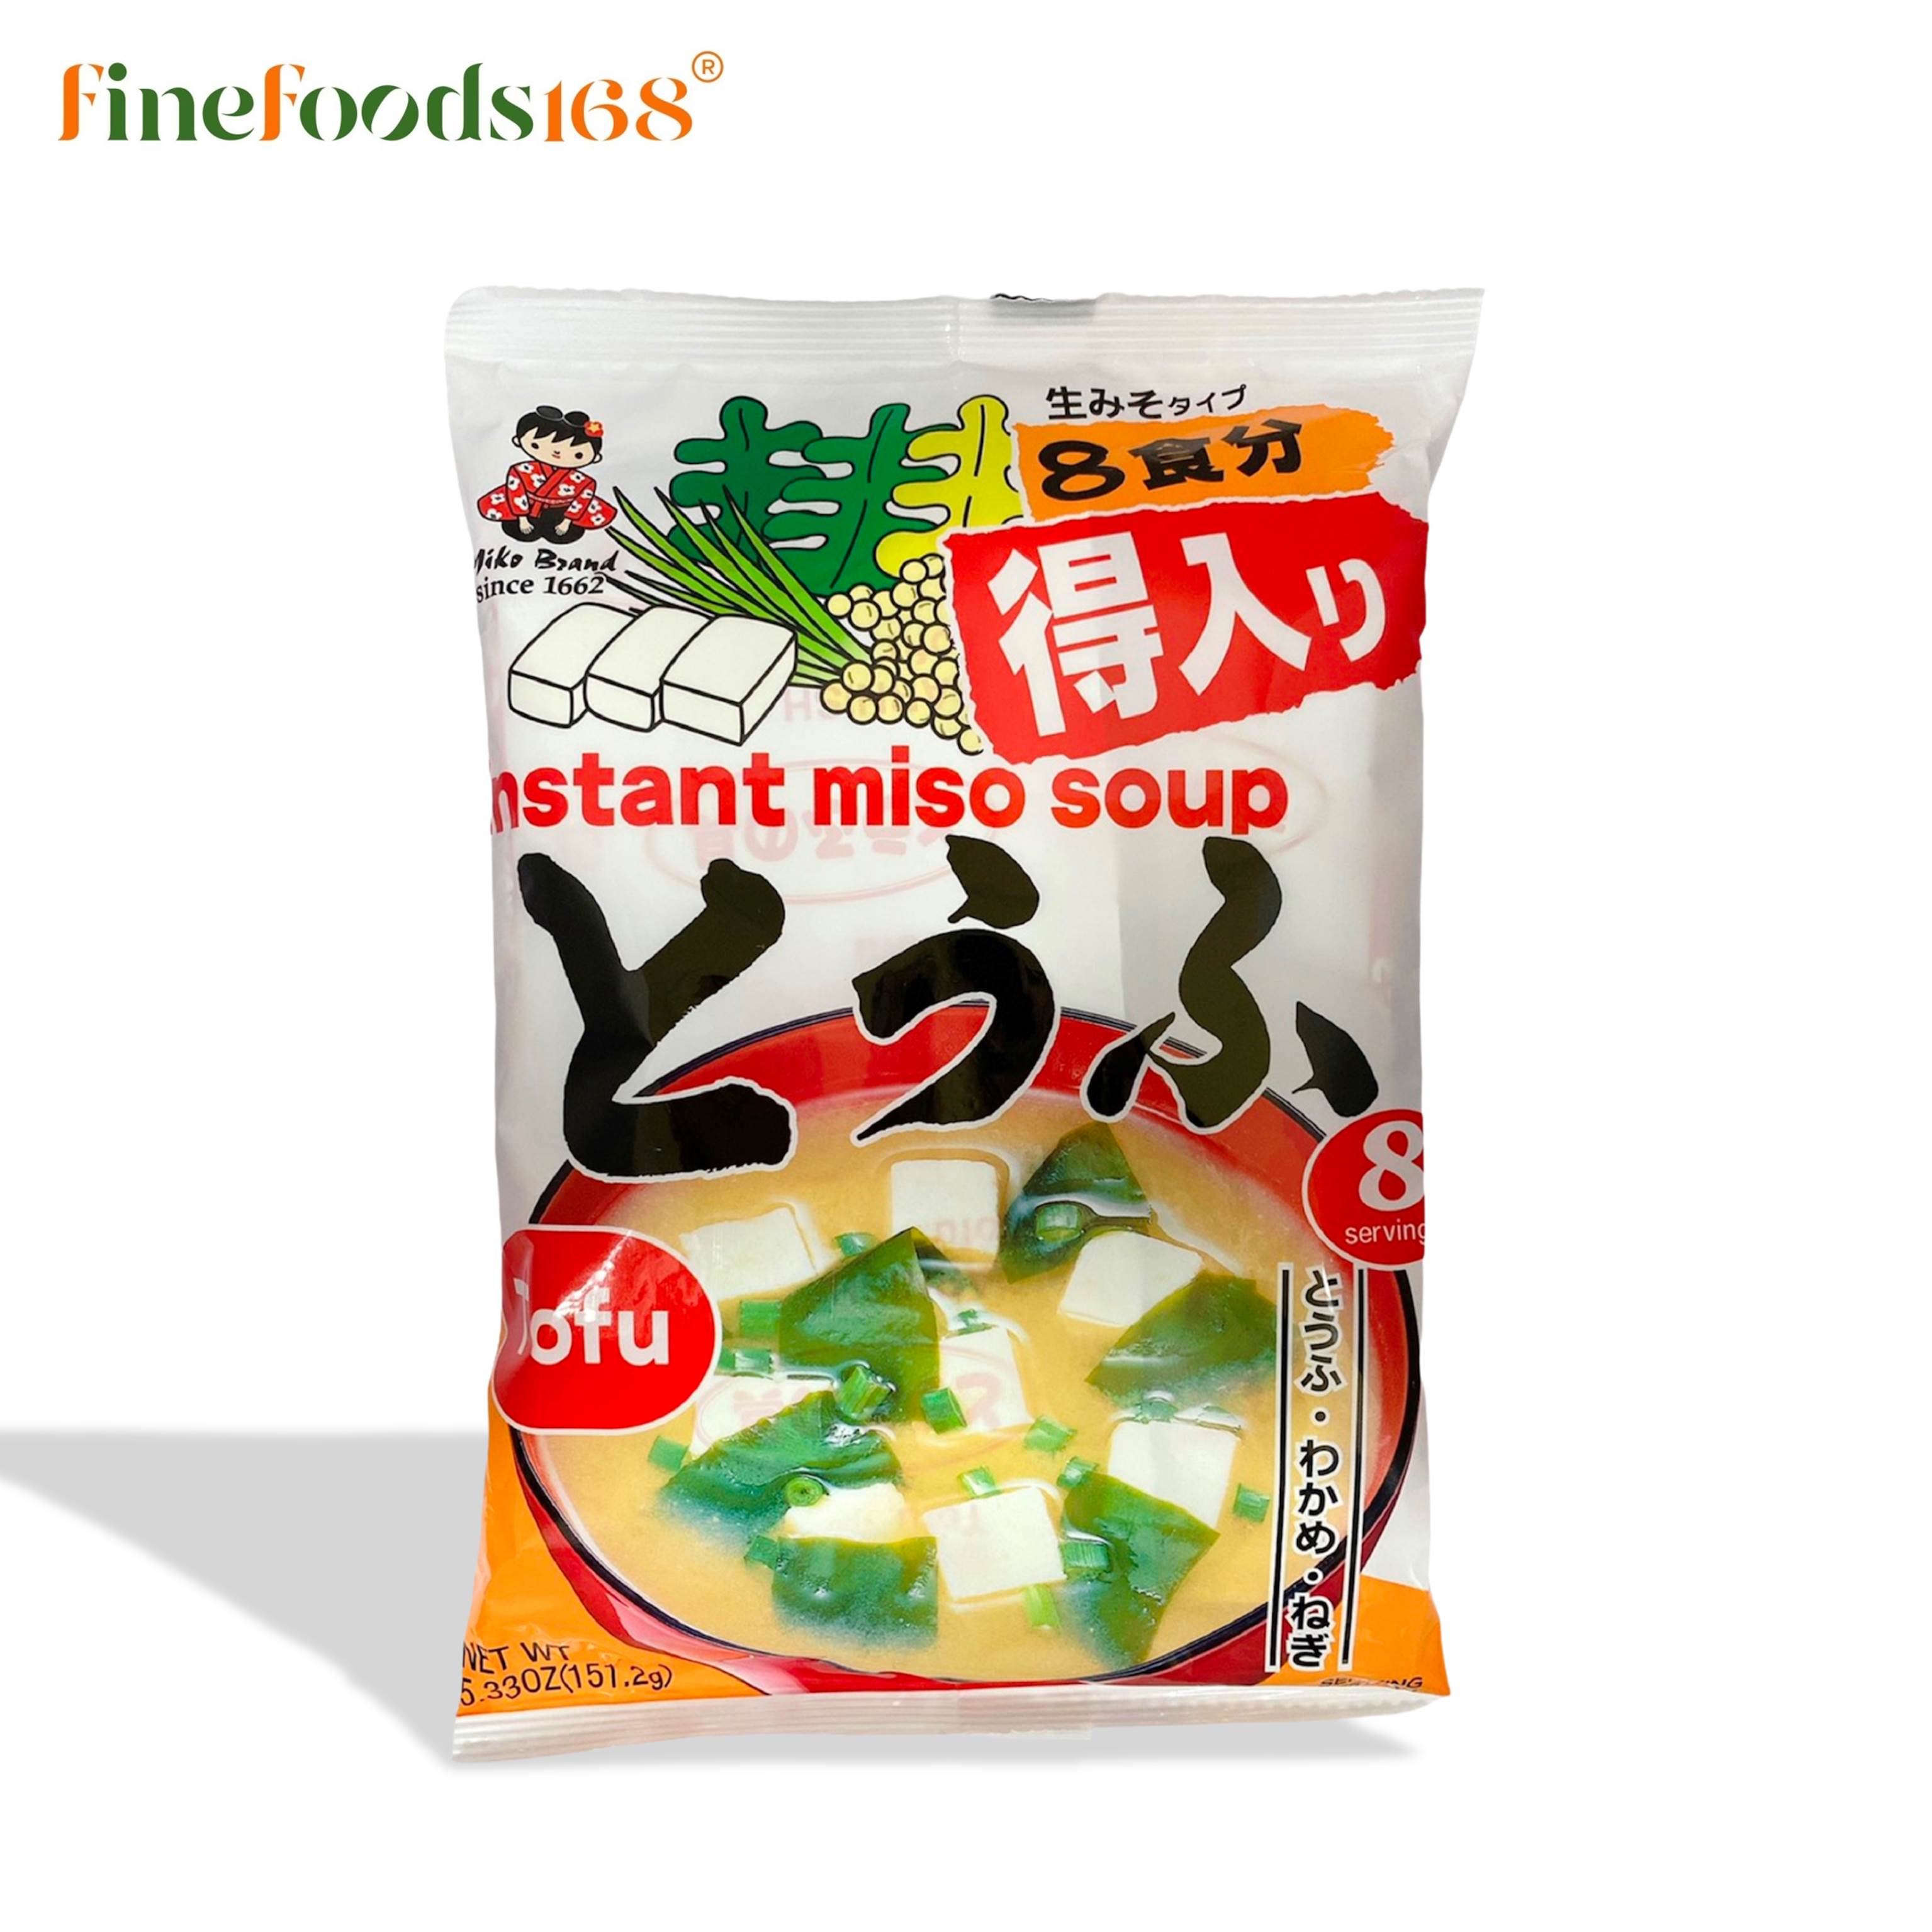 ชินซูอิชิ ซุปมิโซะ เต้าเจี้ยวกึ่งสำเร็จรูปผสมเต้าหู้ญี่ปุ่น 151.2 กรัม Shinsyuichi Instant Miso Soup Tofu 151.2 g.